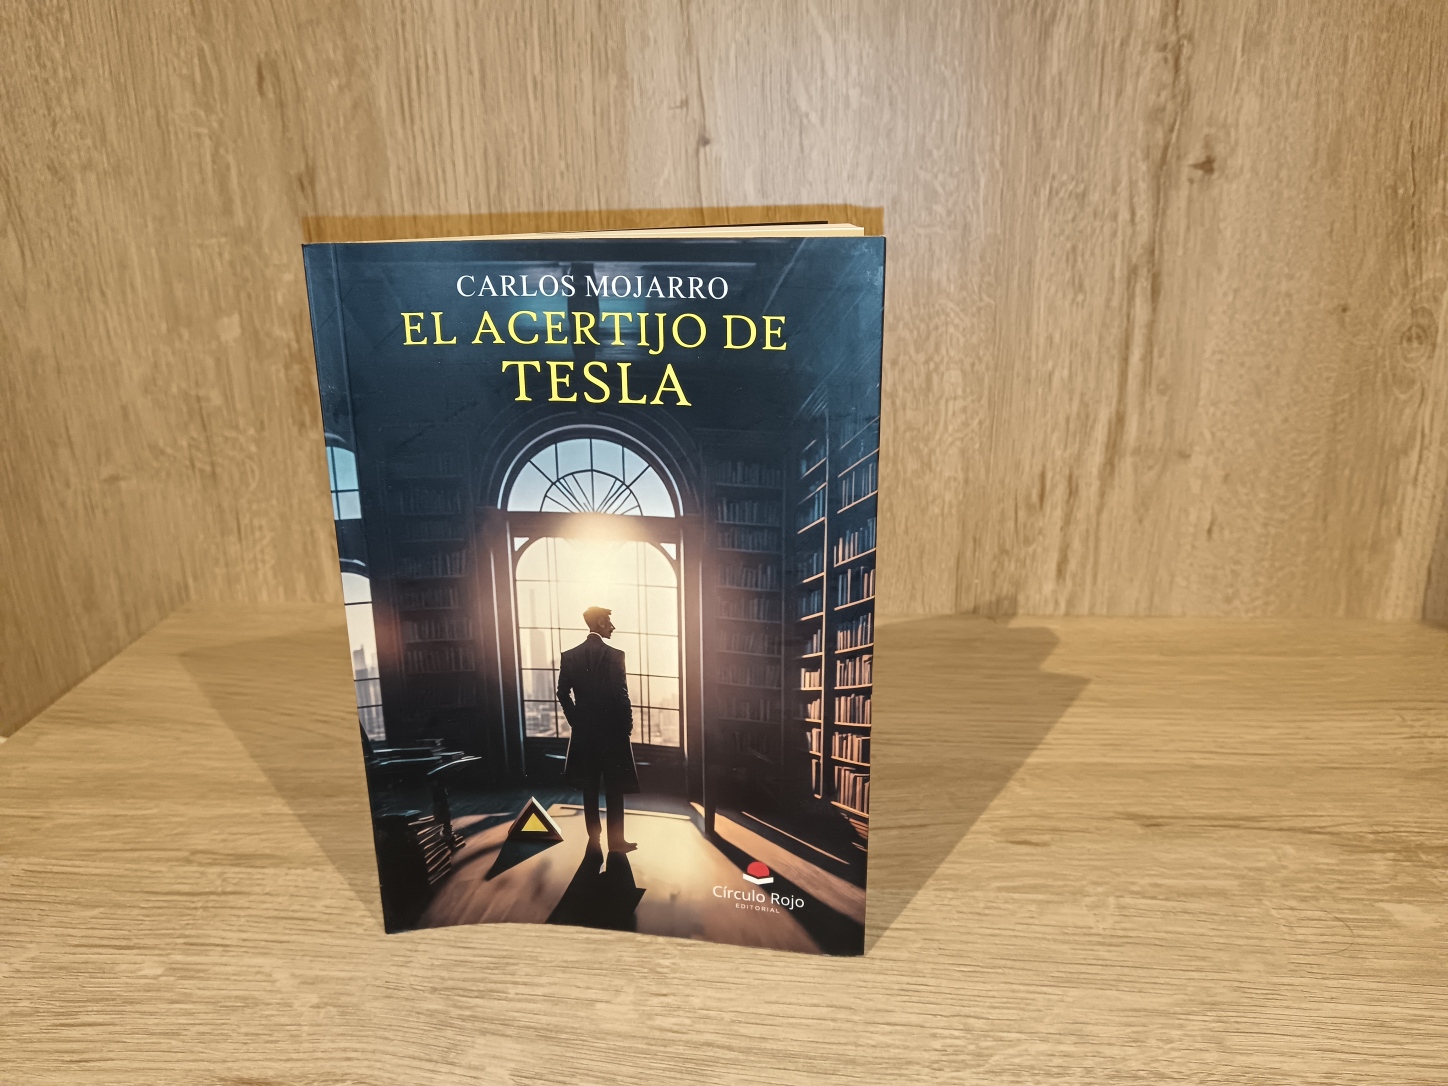 Entrevistamos a Carlos Mojarro, autor de “El acertijo de Tesla”, obra publicada por Círculo Rojo.